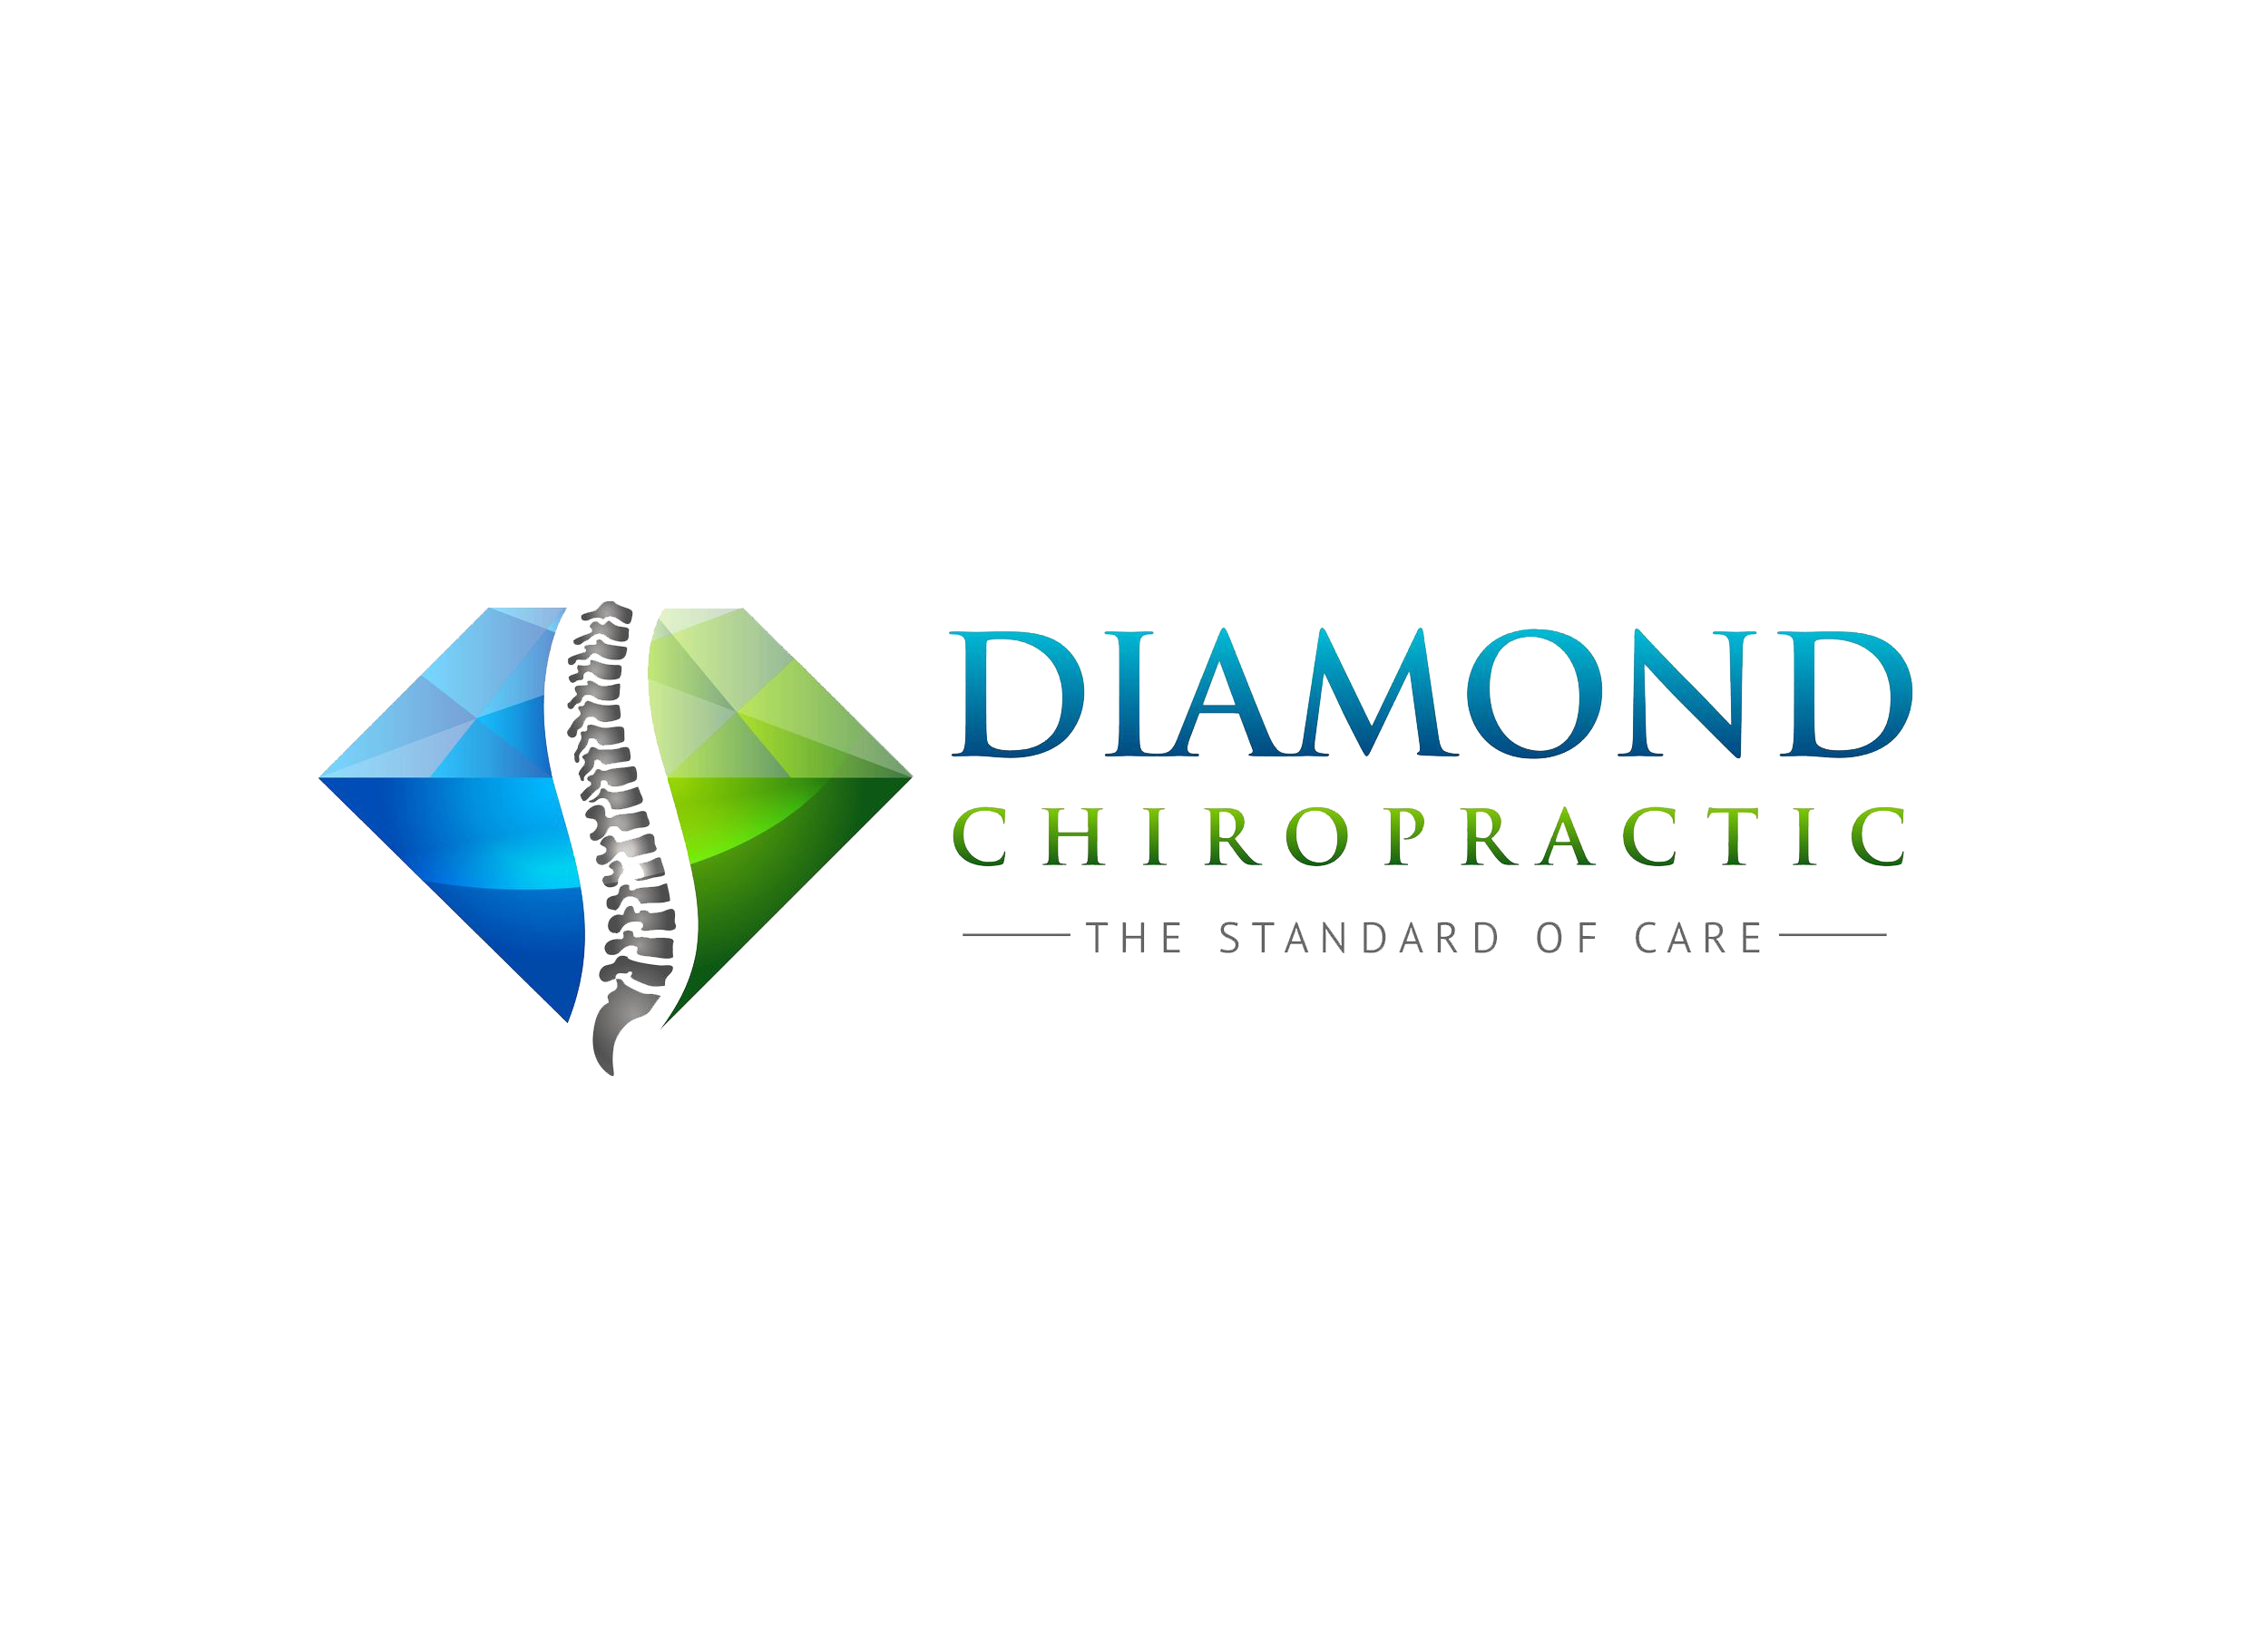 Diamond Chiropractic